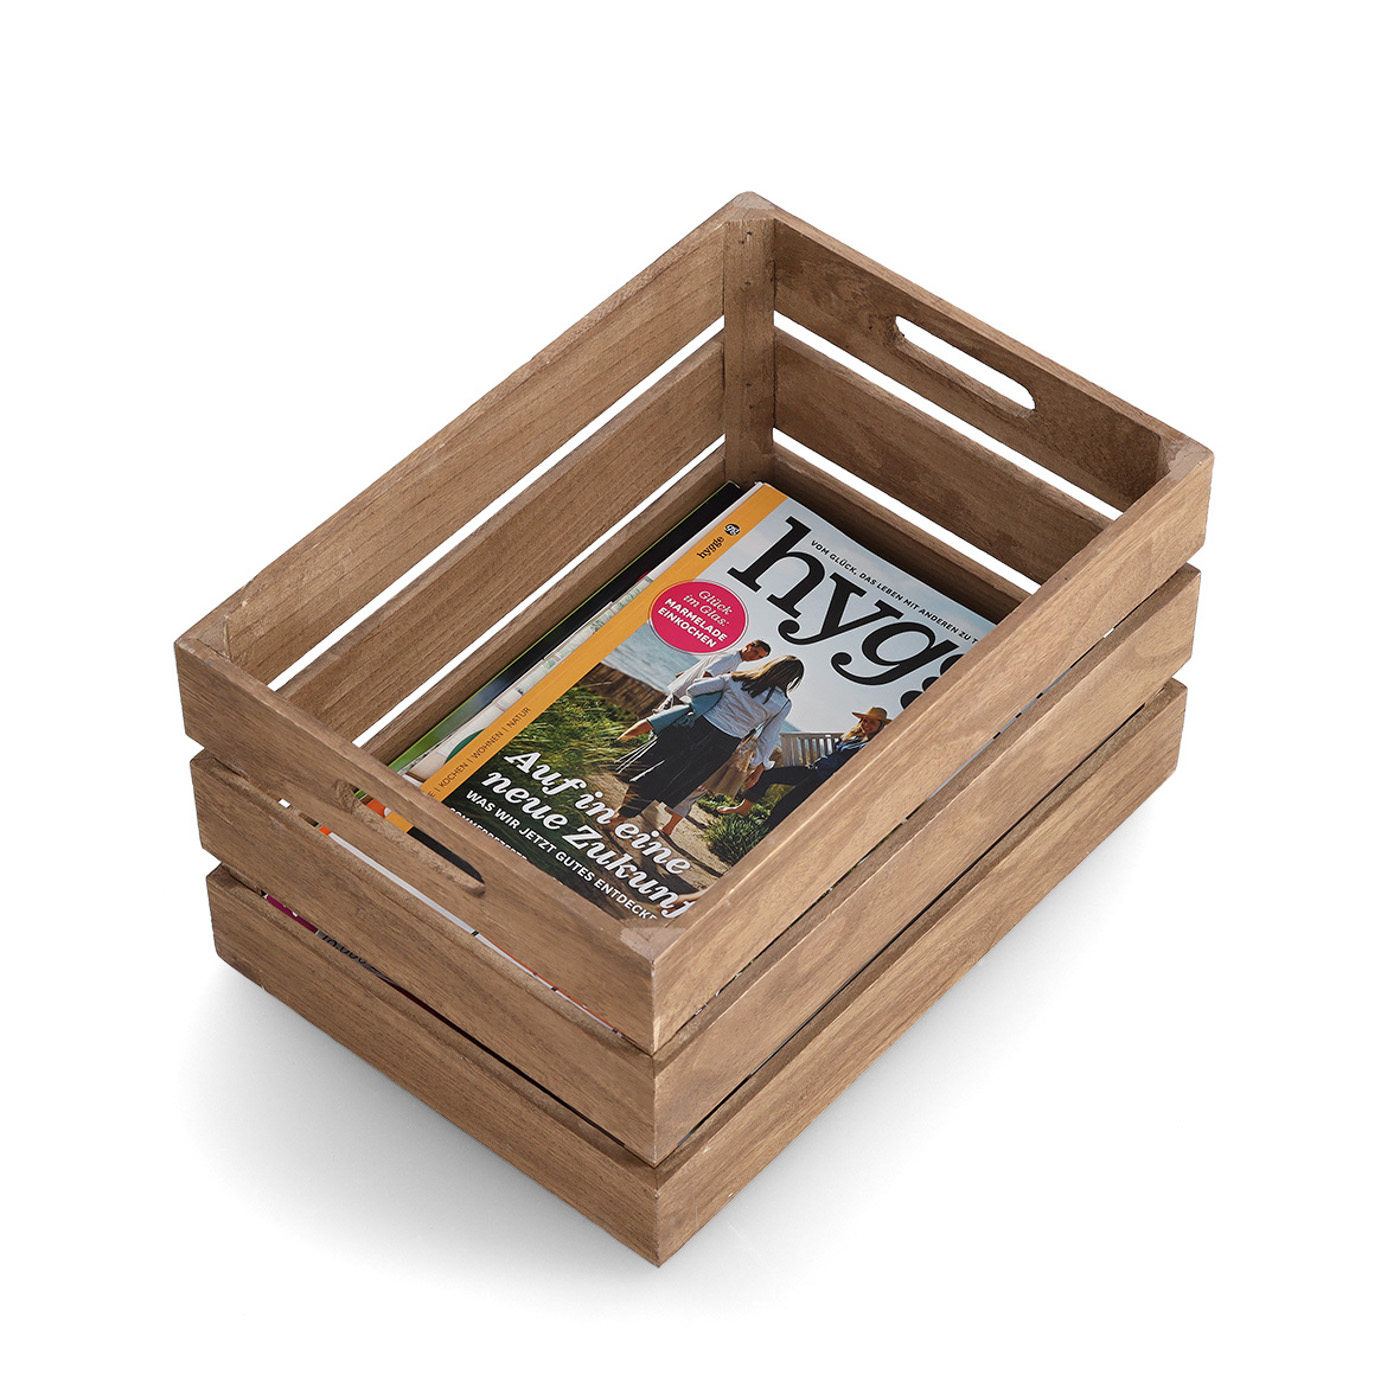 Aufbewahrungs-Kiste, Holz lackiert, 35x25x20 cm. Farbe: natur. Diese praktische Aufbewahrungskiste wurde aus hochwertigem Holz gefertigt und